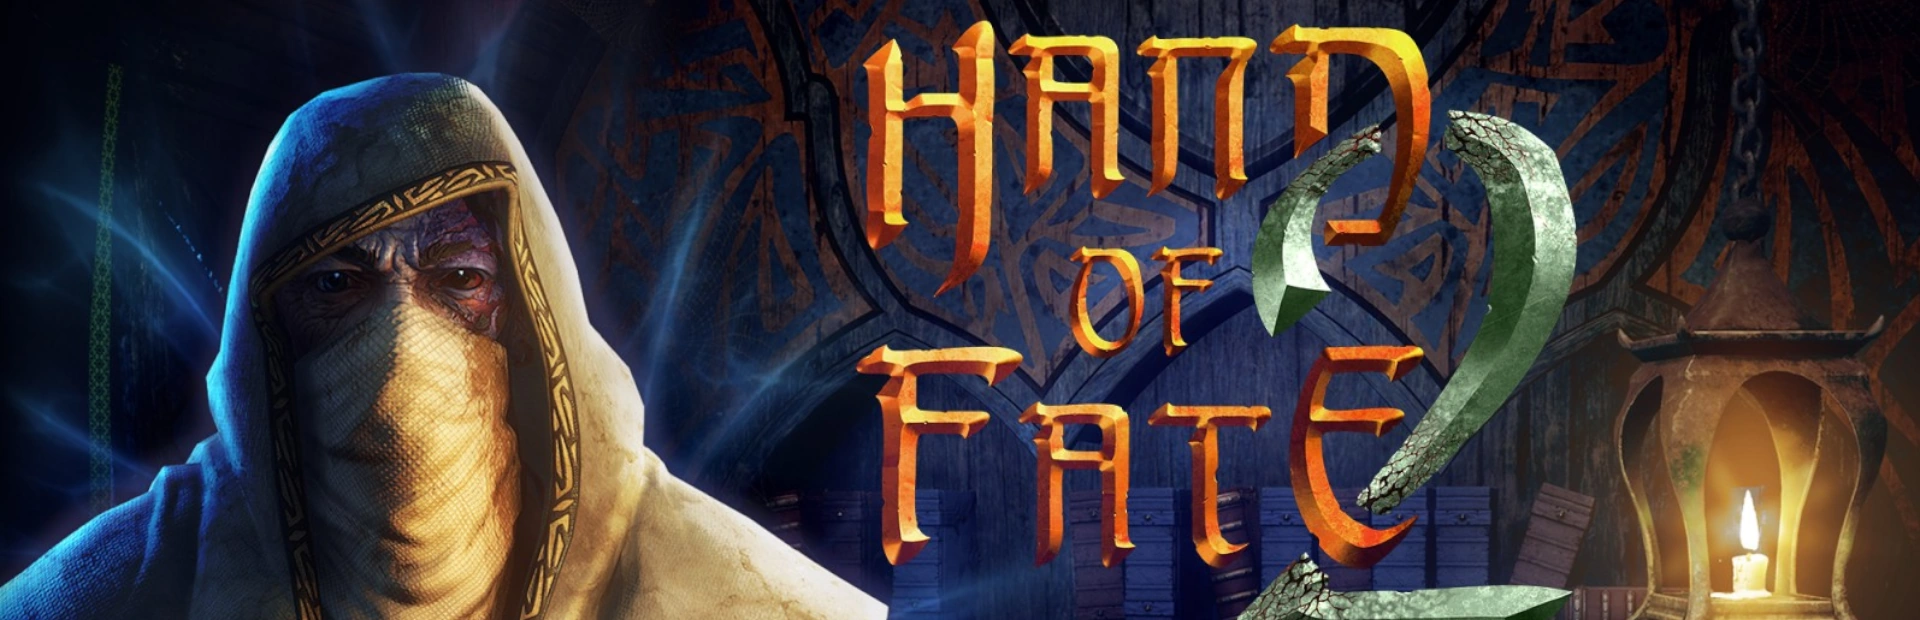 دانلود بازی Hand of Fate برای کامپیوتر | گیمباتو